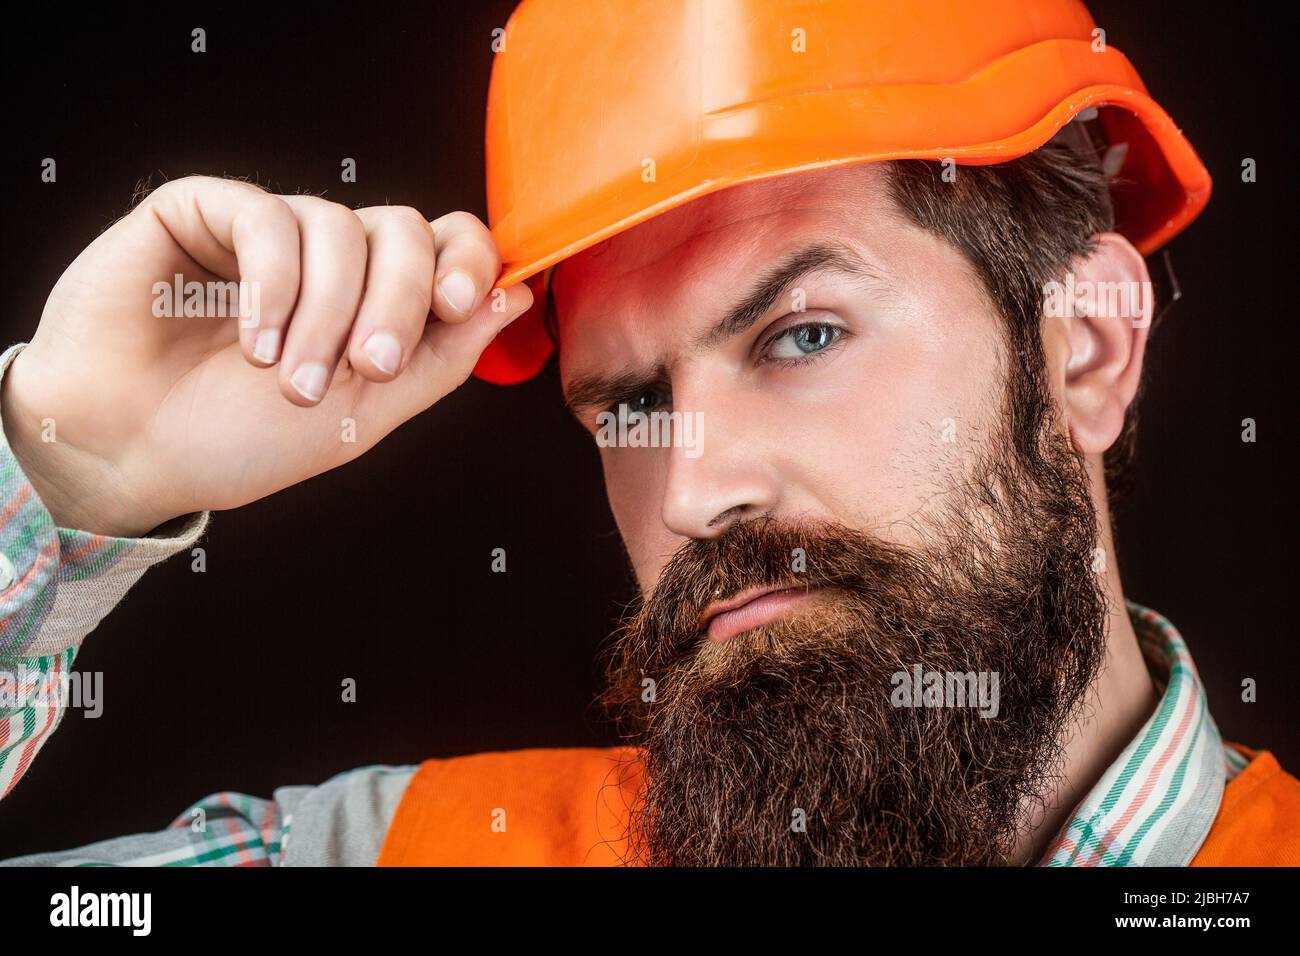 Un hombre con barba, casco y ropa de trabajo. retrato de un